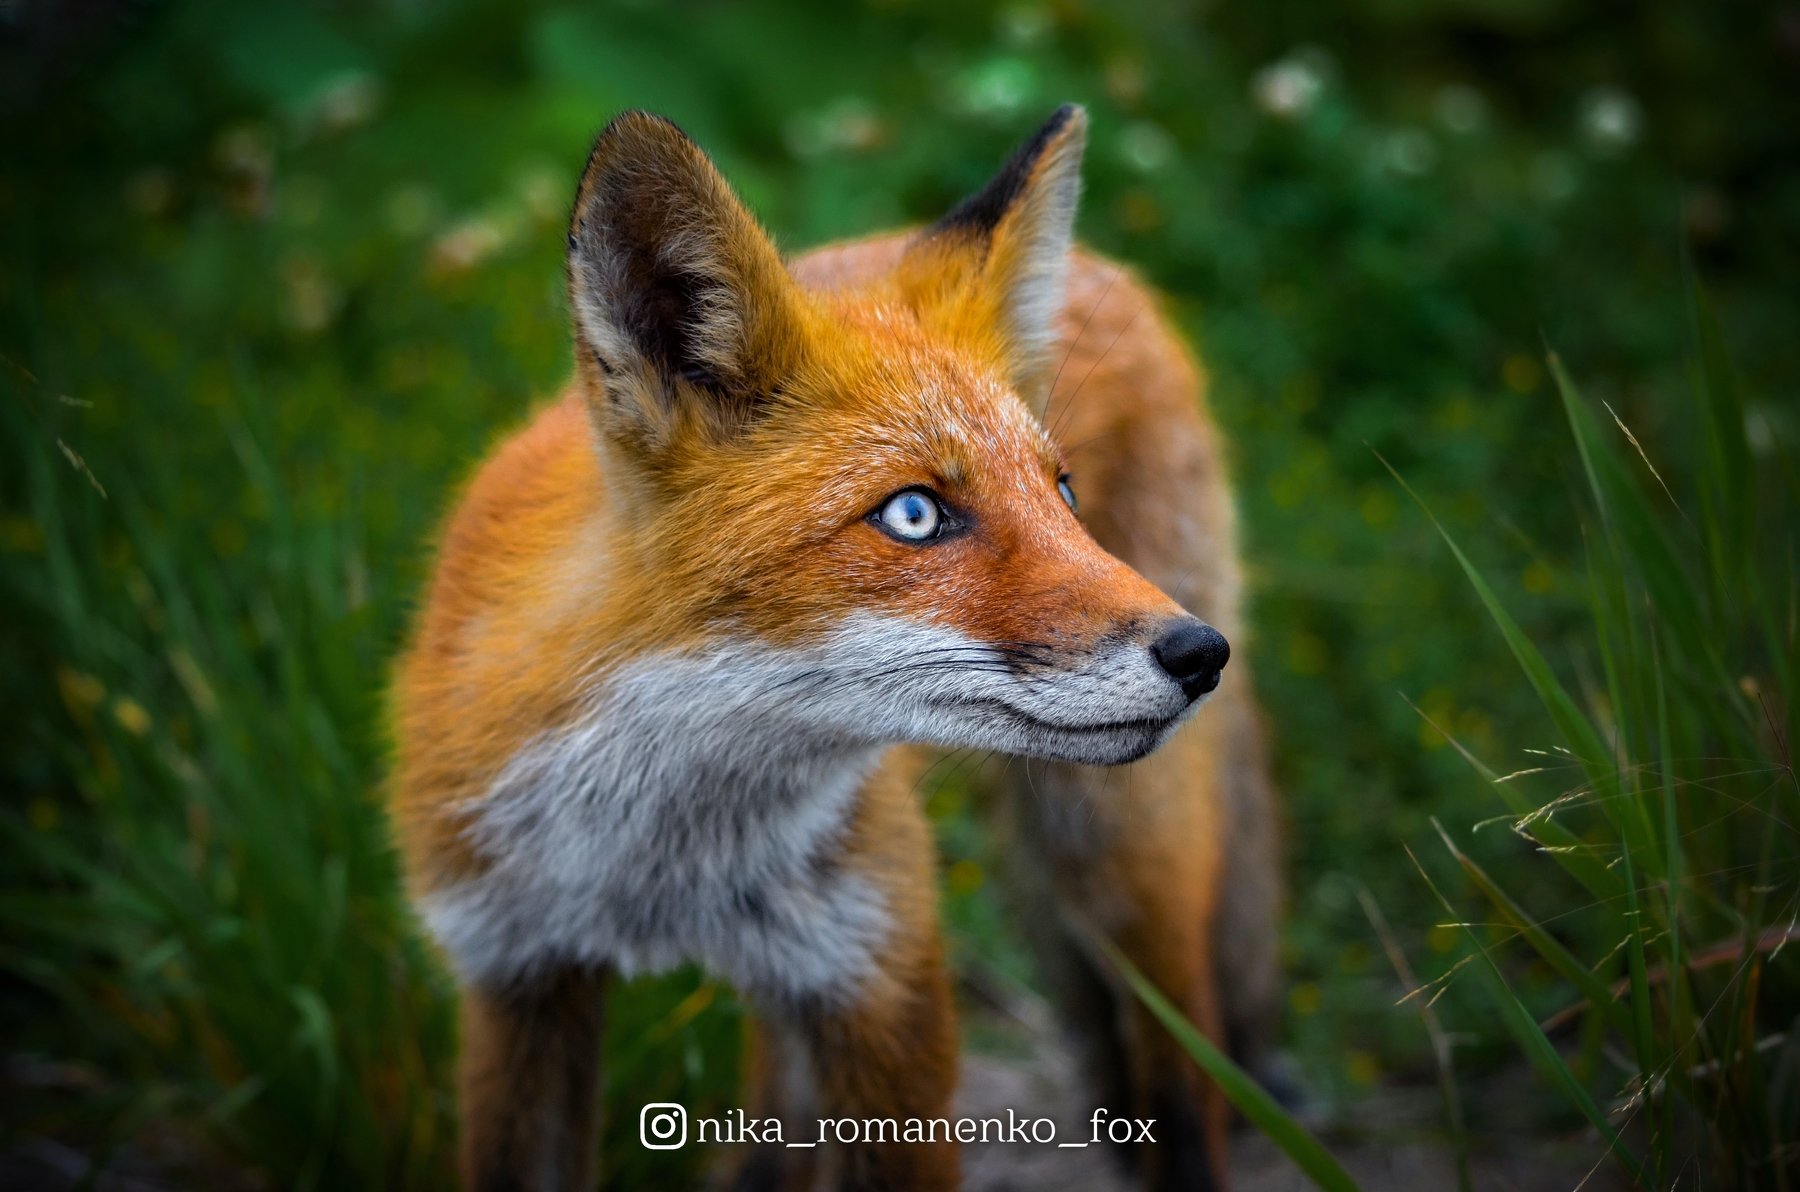 лиса, лисы, животные, лето, лес, animals, fox, foxes, animal, лис, red fox, forest, Вероника Романенко